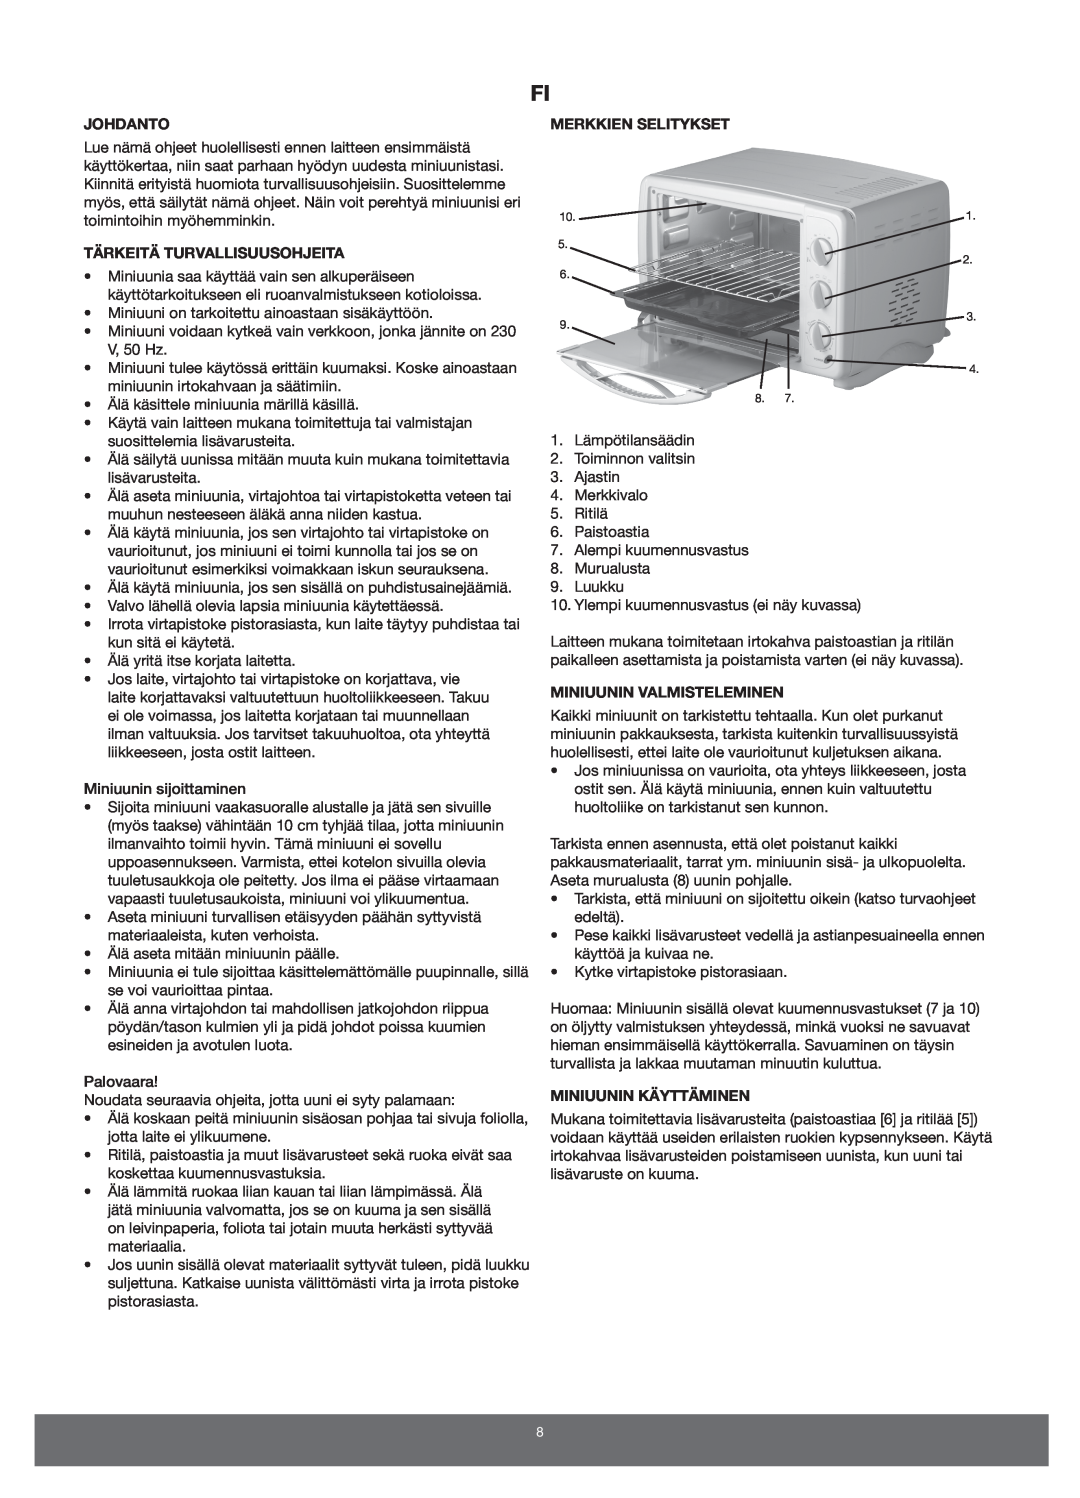 Melissa 651-007 manual Johdanto, Tärkeitä Turvallisuusohjeita, Merkkien Selitykset, Miniuunin Valmisteleminen 